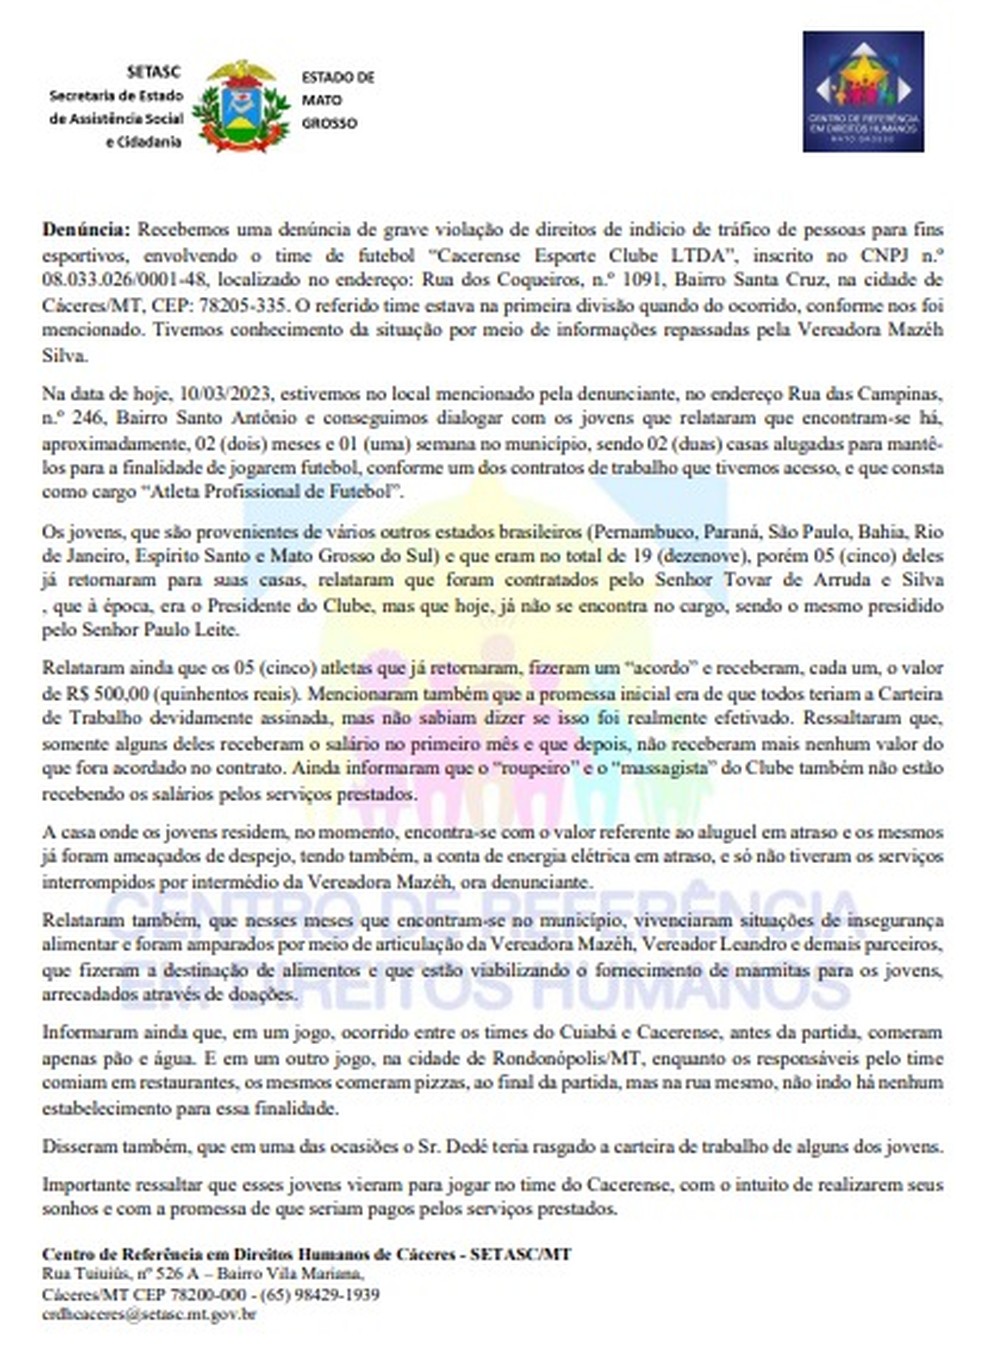 Documento protocolado pelo (CRDH) de Cáceres contra o Cacerense — Foto: Centro de Referência em Direitos Humanos (CRDH)